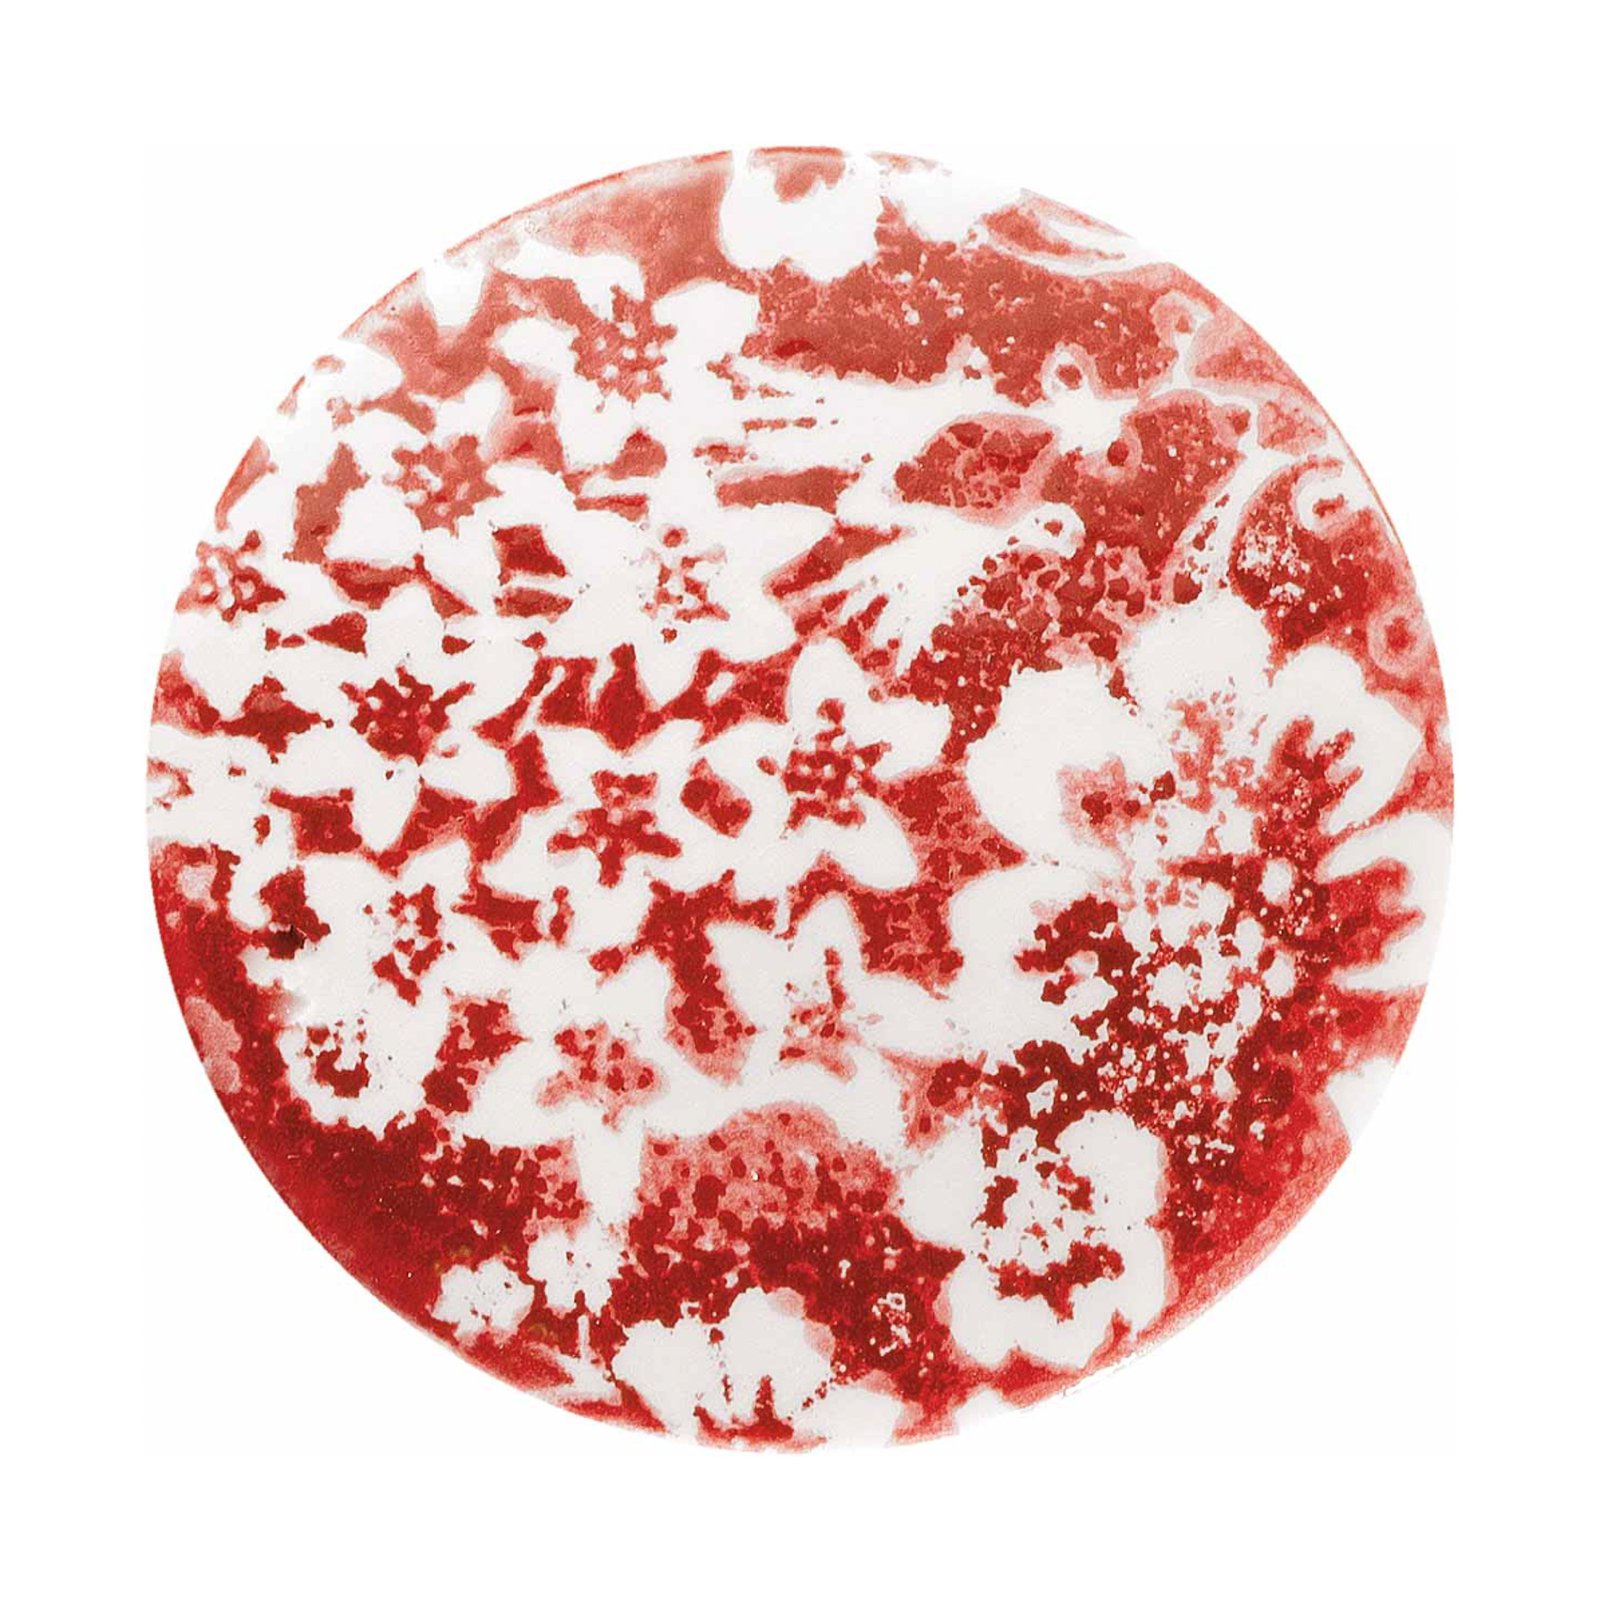 Hängelampe PI mit Blumenmuster, Ø 5,5 cm rot/weiß